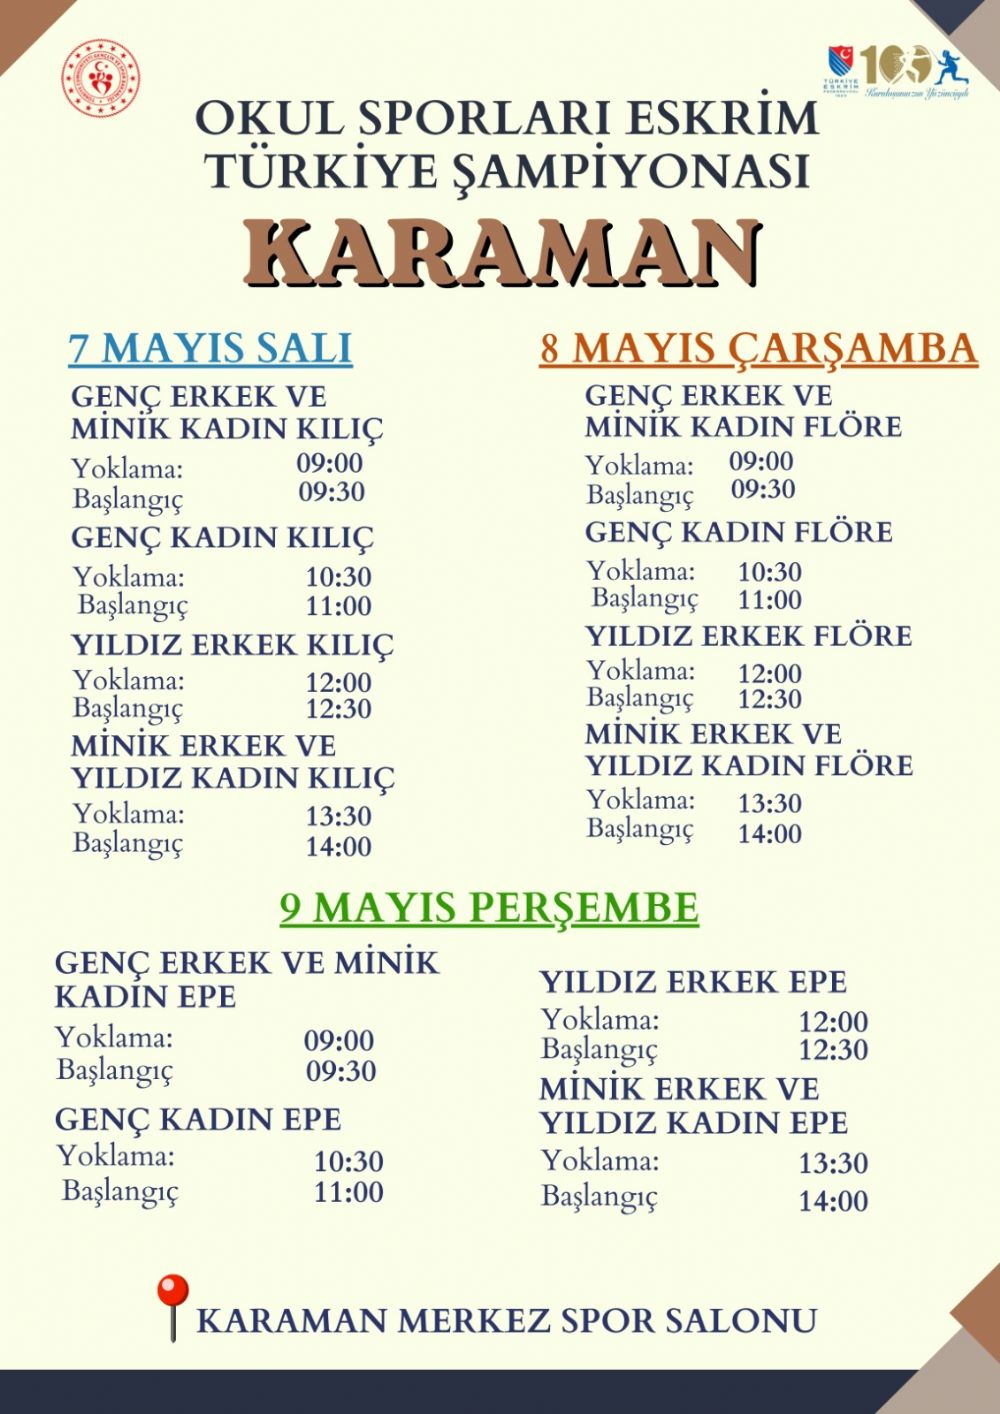 Okul Sporları Eskrim Türkiye Şampiyonası Programı Hk.